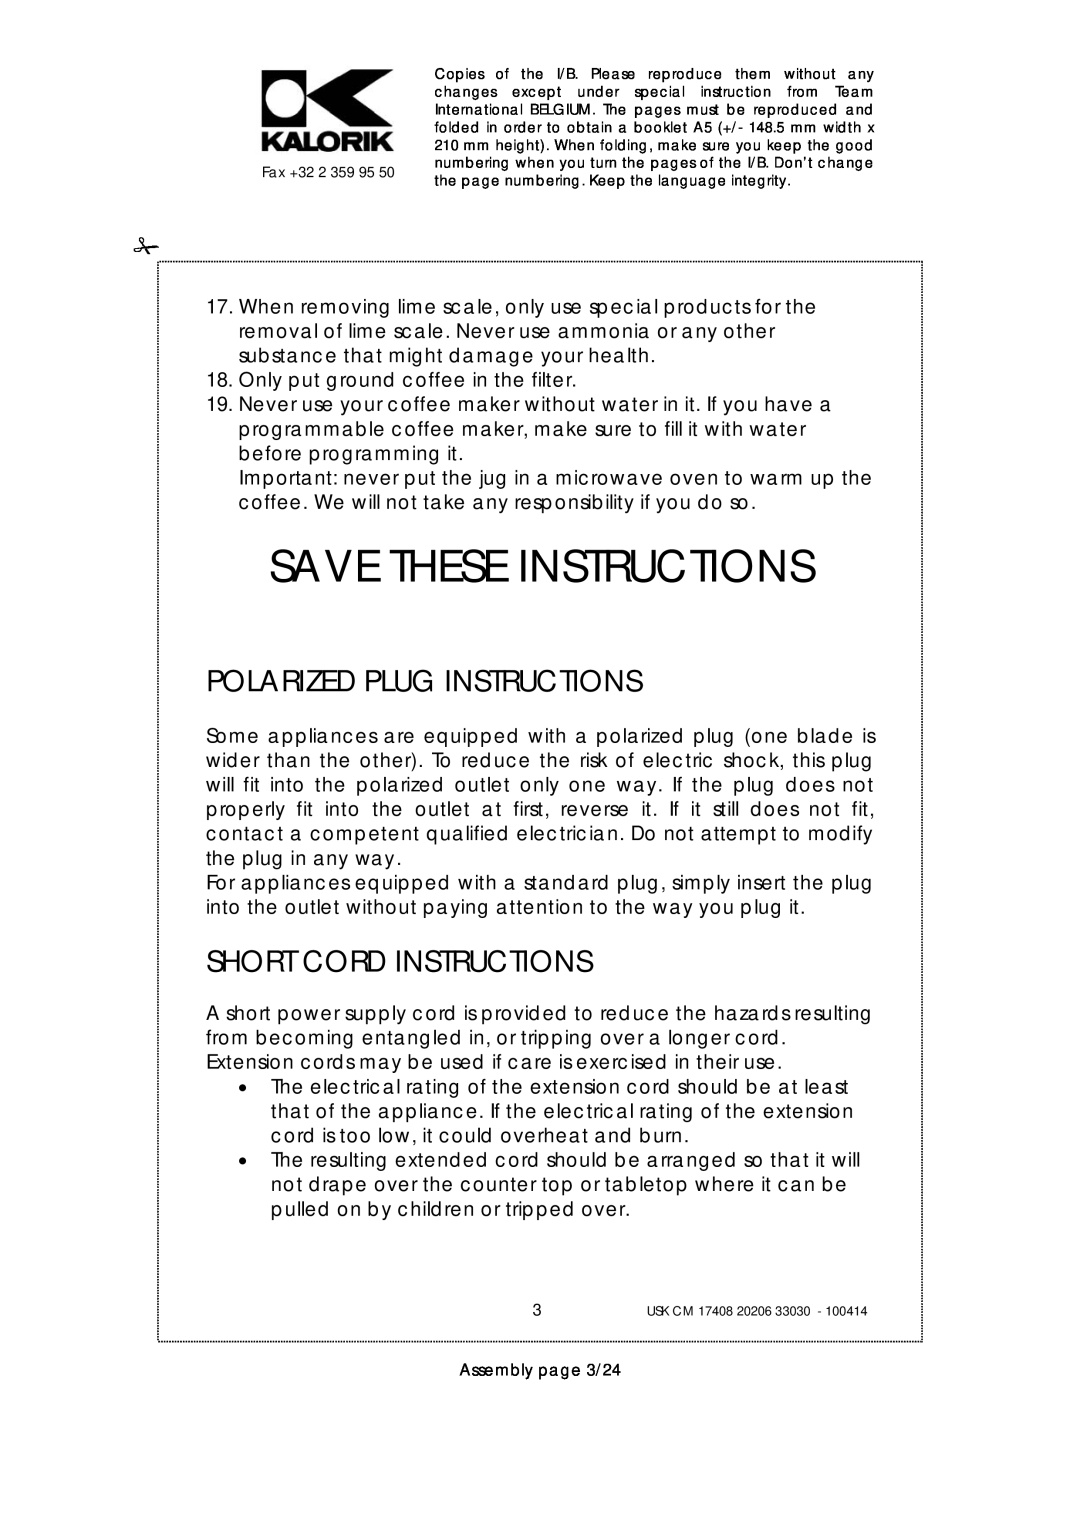 Kalorik USK CM 33030, USK CM 17408 manual Save These Instructions, Polarized Plug Instructions, Short Cord Instructions 